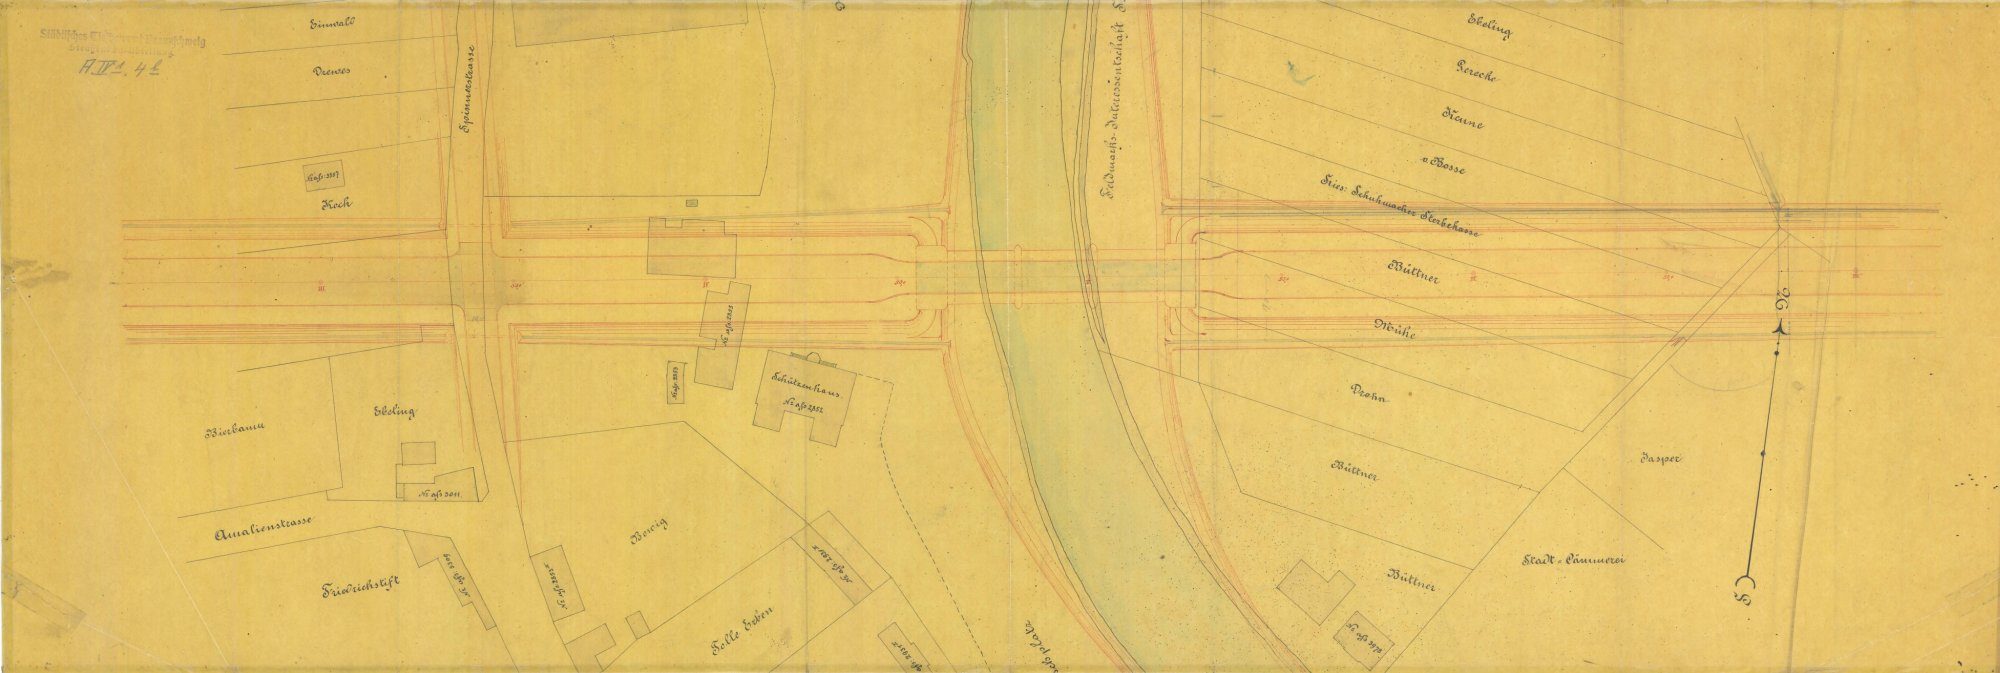 Wendenringbrücke, Planung des nördlichen Rings, Lageplan, 1889